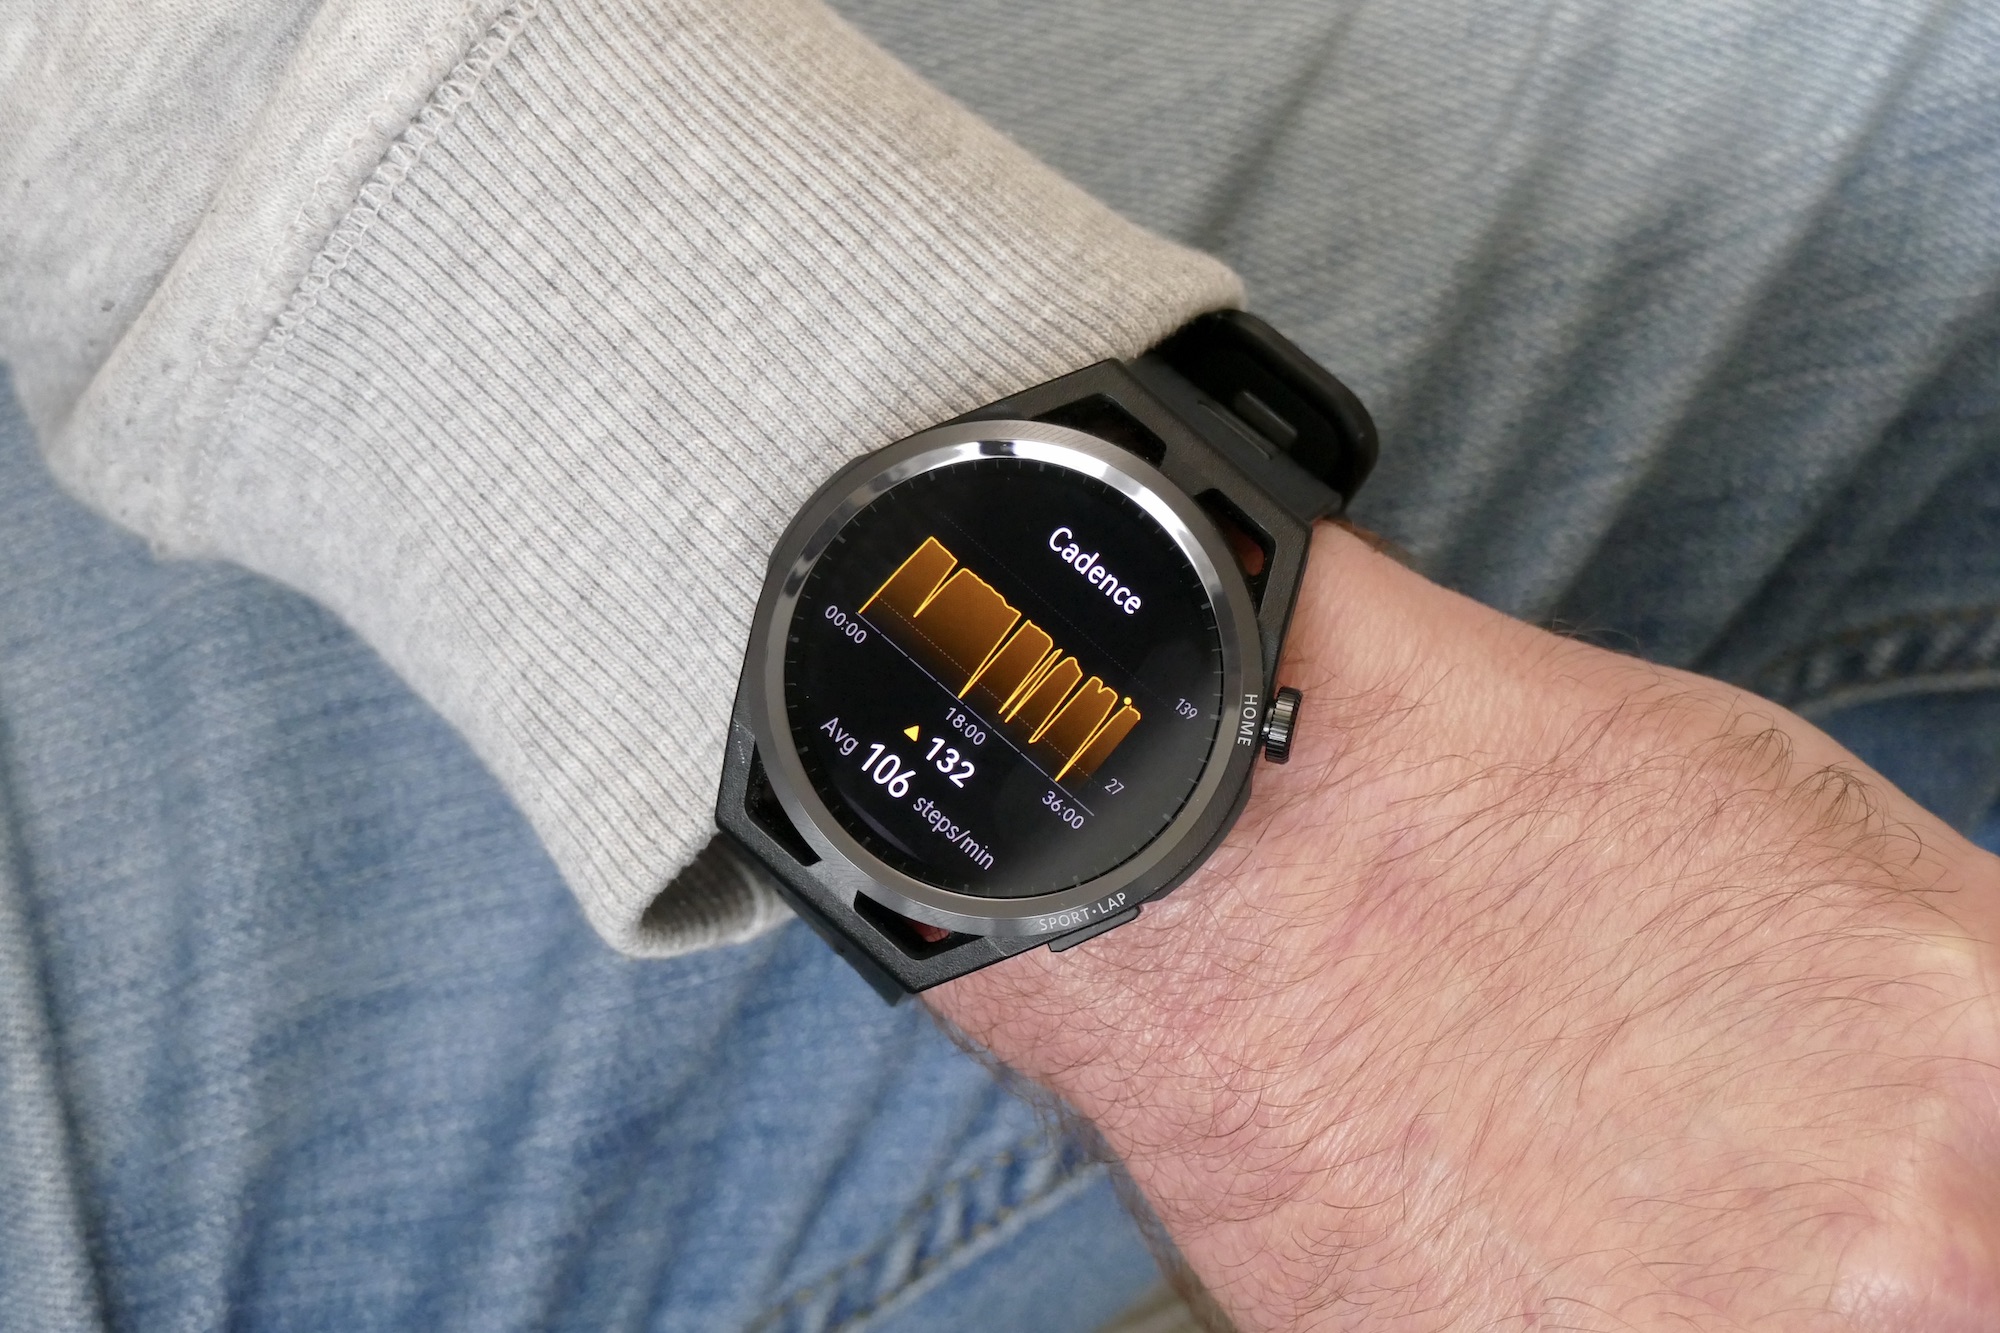 Huawei Watch GT Runner cadence data.